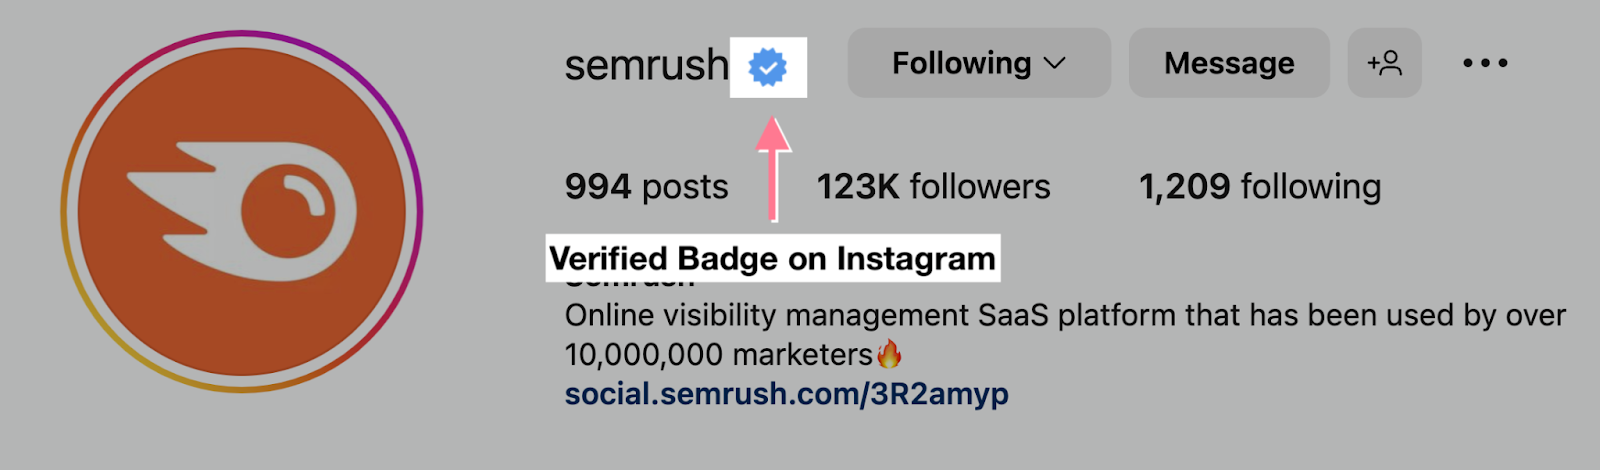 Semrush verified badge on instagram